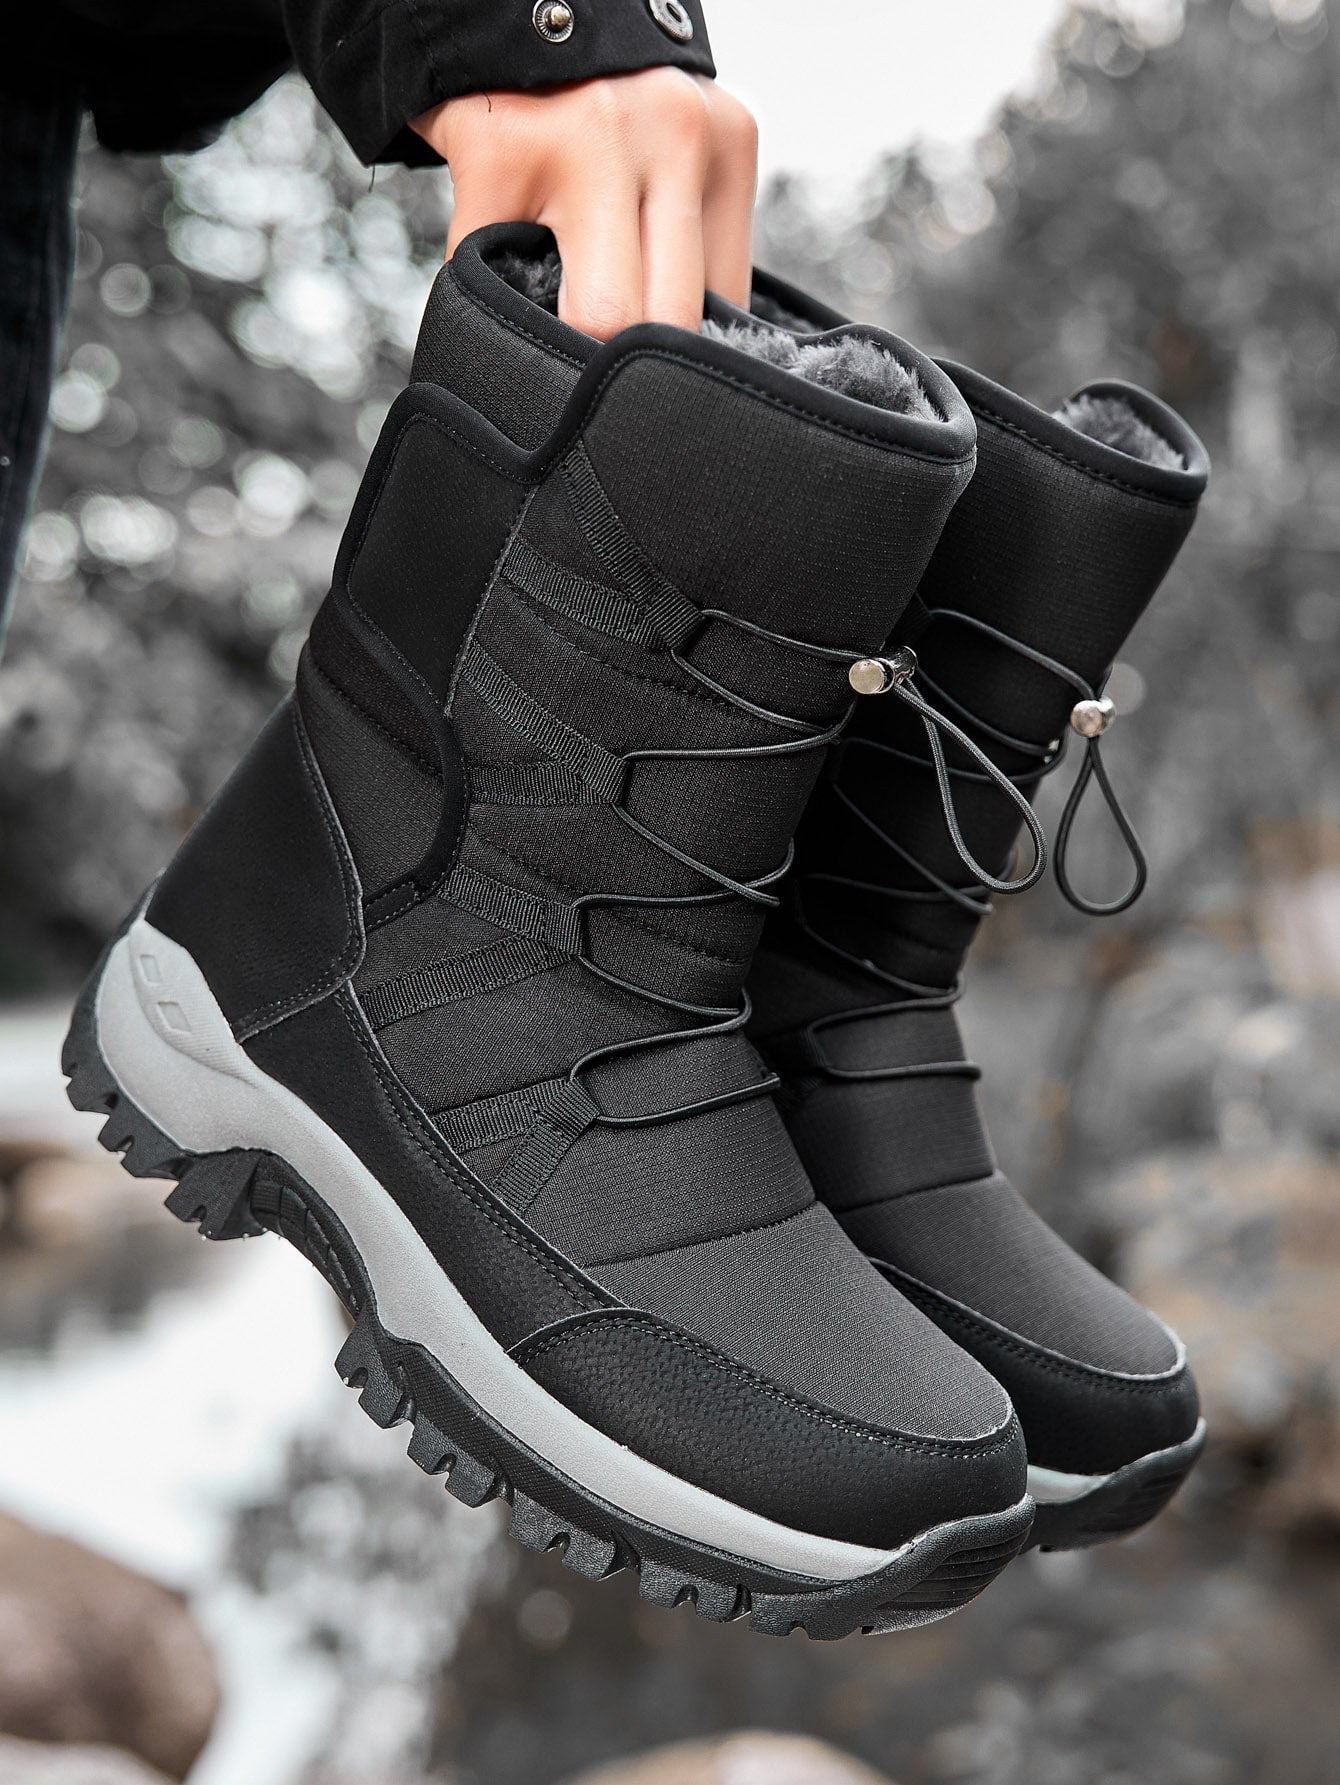 Winter Fleece Lined Men Hiking Boots Outdoor Warm Slip-Resistant Men Shoes